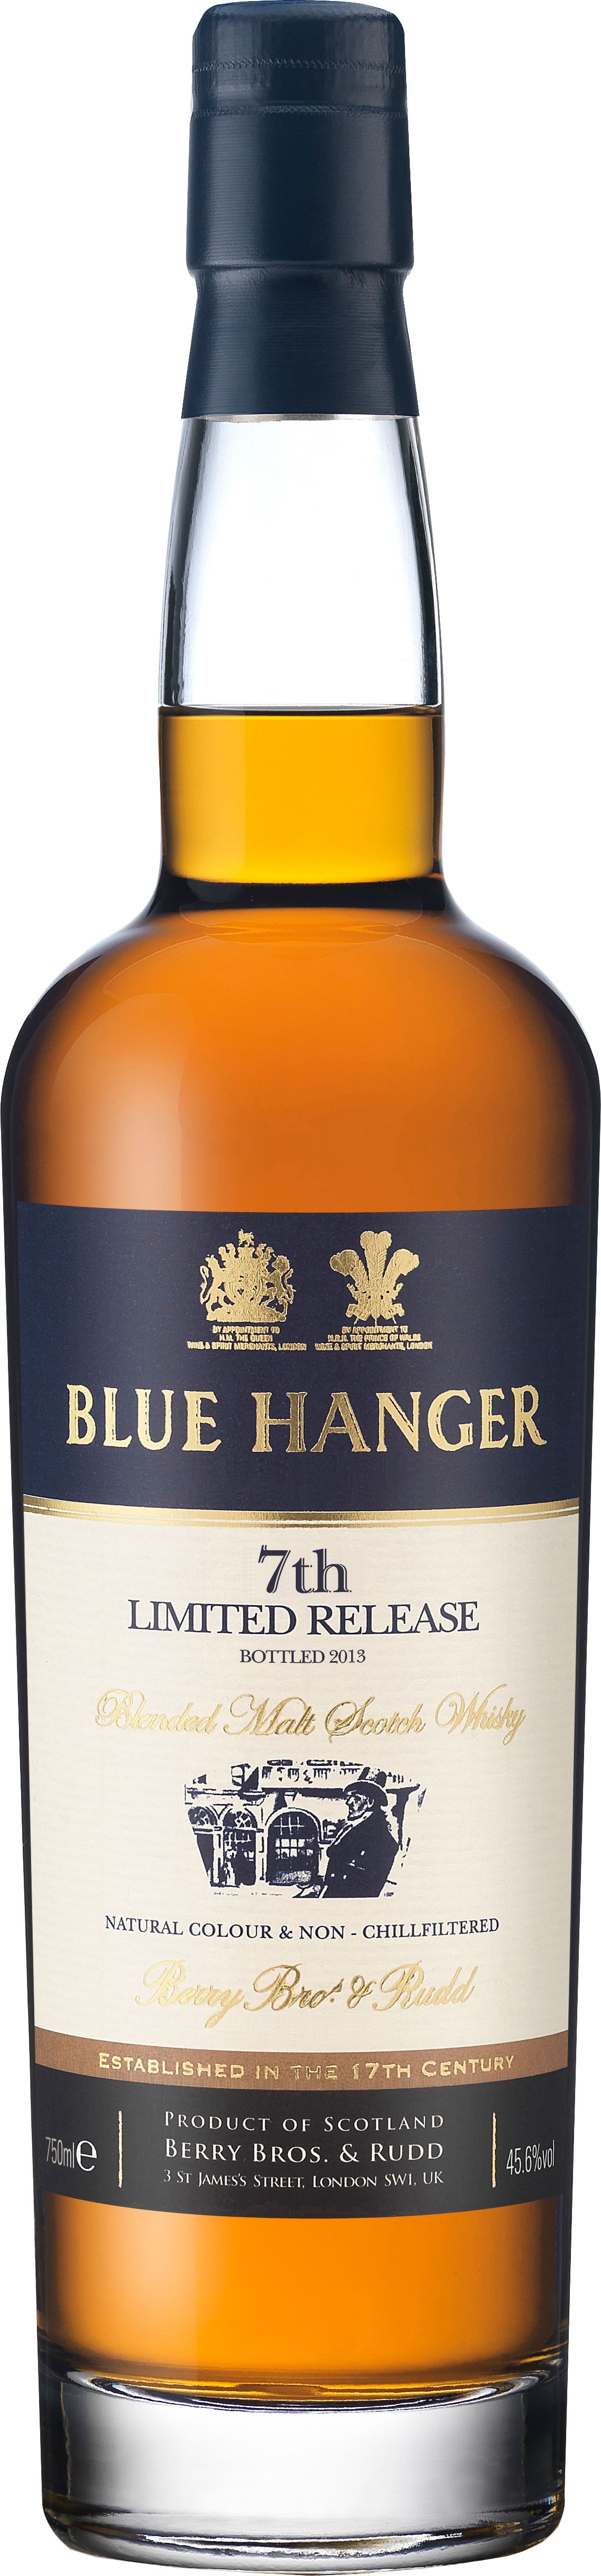 Caskers Selection: Blue Hanger Blended Malt Scotch Whisky 7th ...